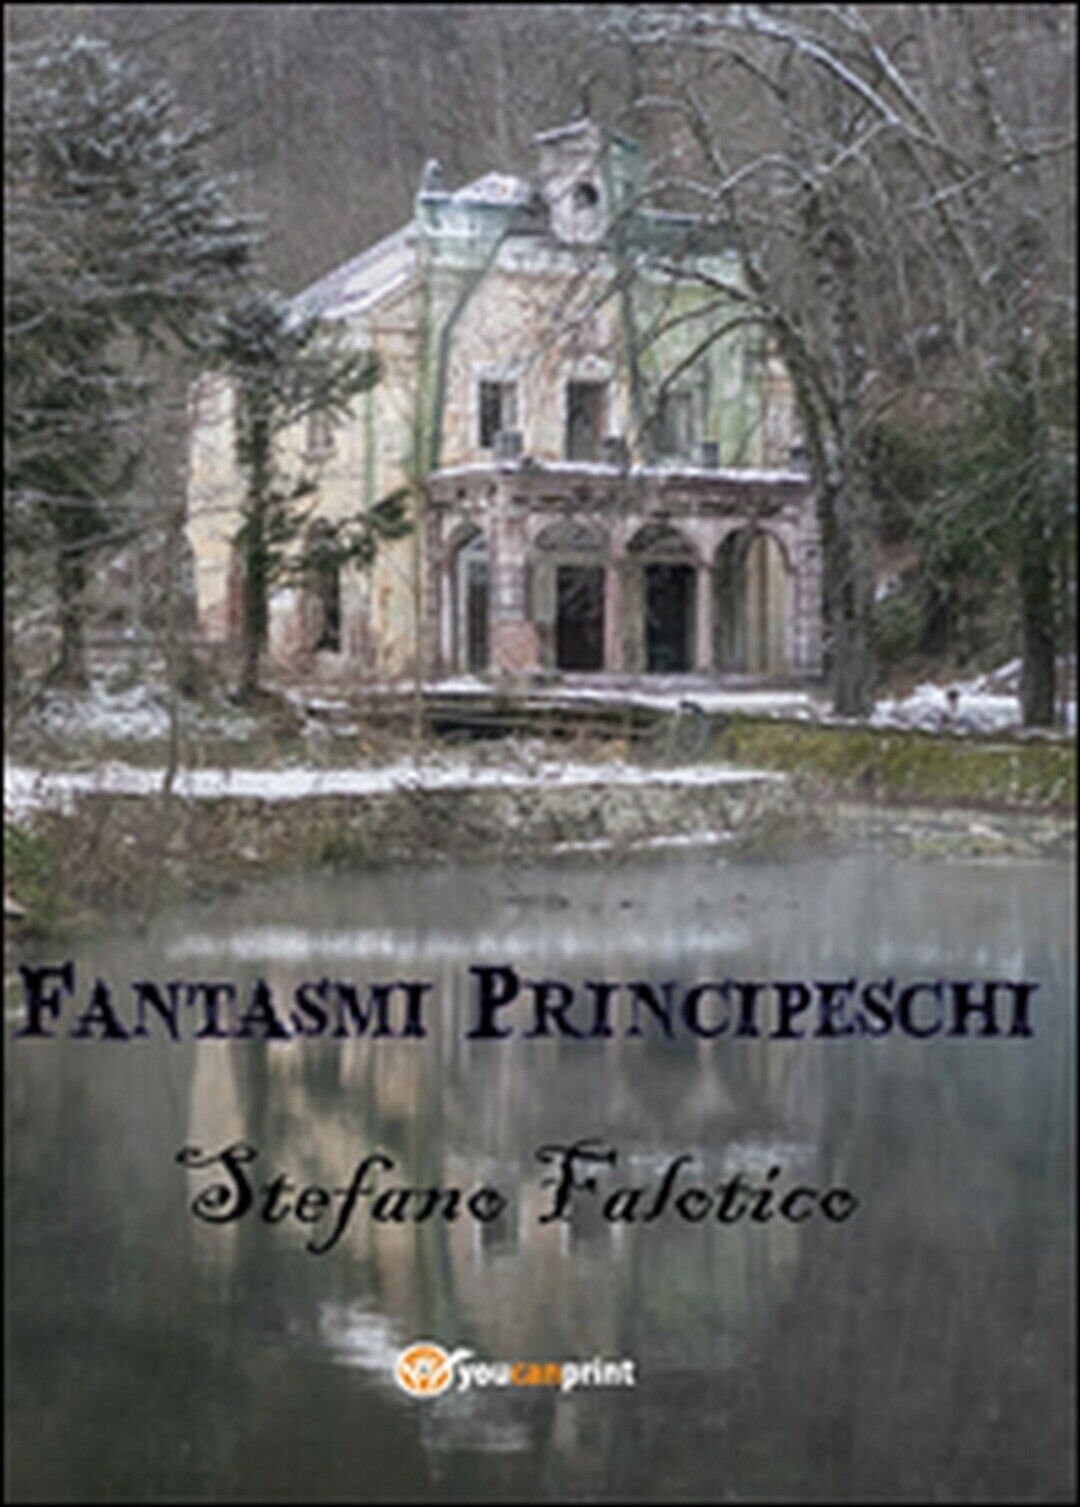 Fantasmi principeschi  di Stefano Falotico,  2015,  Youcanprint libro usato